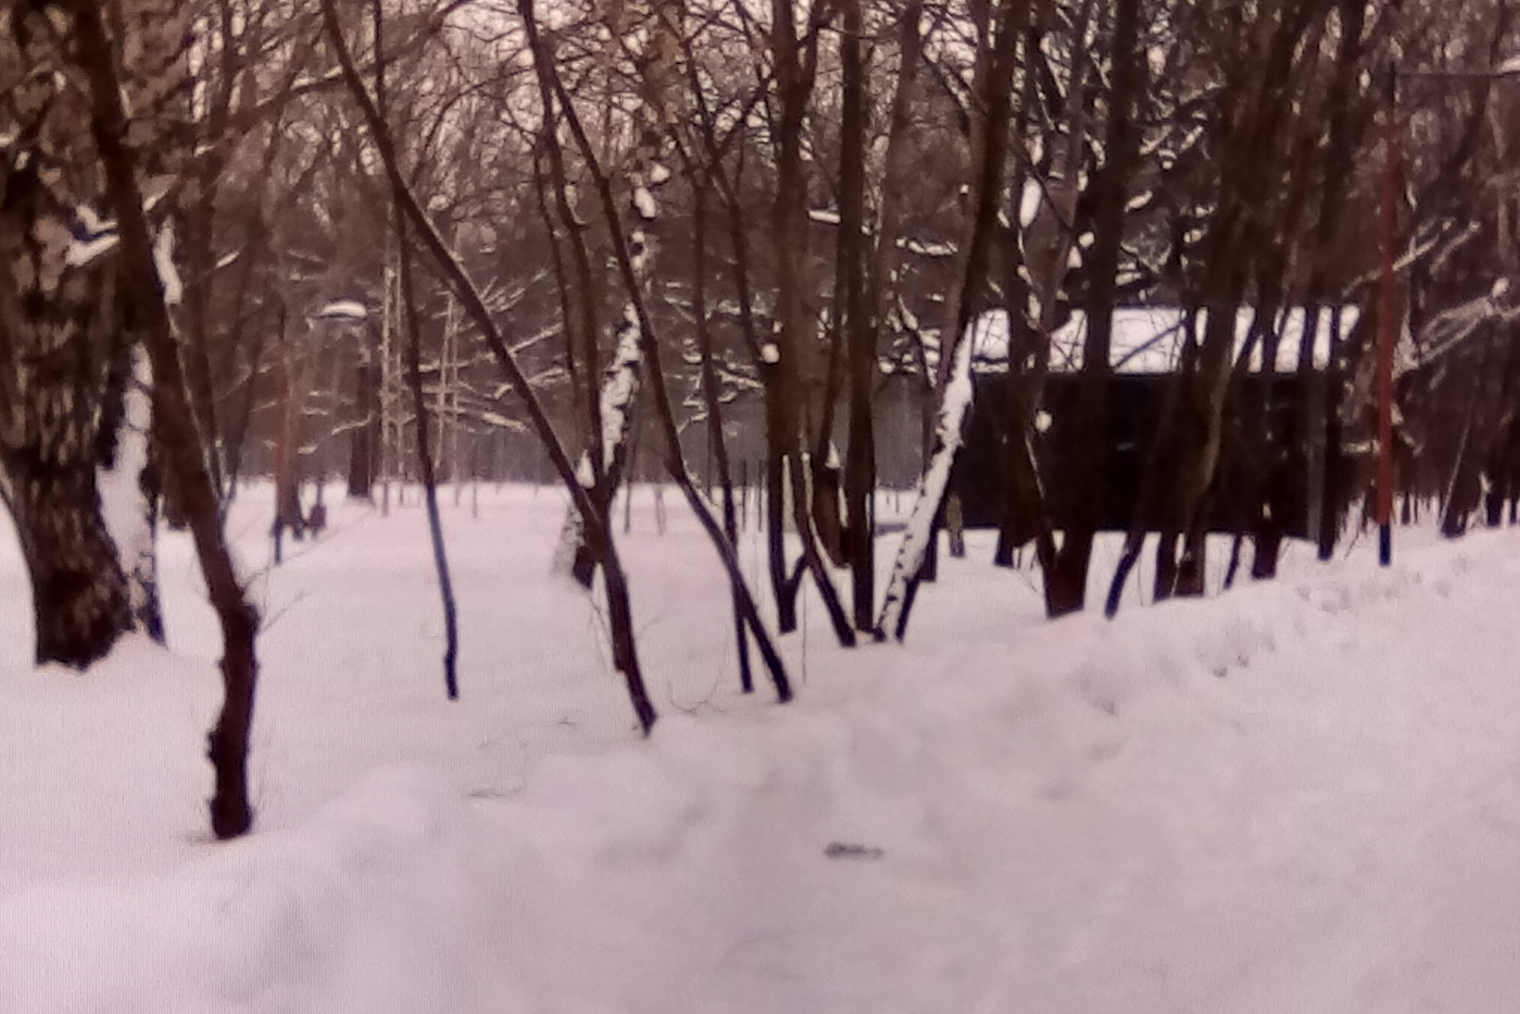 Зимний парк как будто снимали на дедушкин фотоаппарат: белый снег с эффектом сепии, а ветви деревьев сливаются в мутное пятно